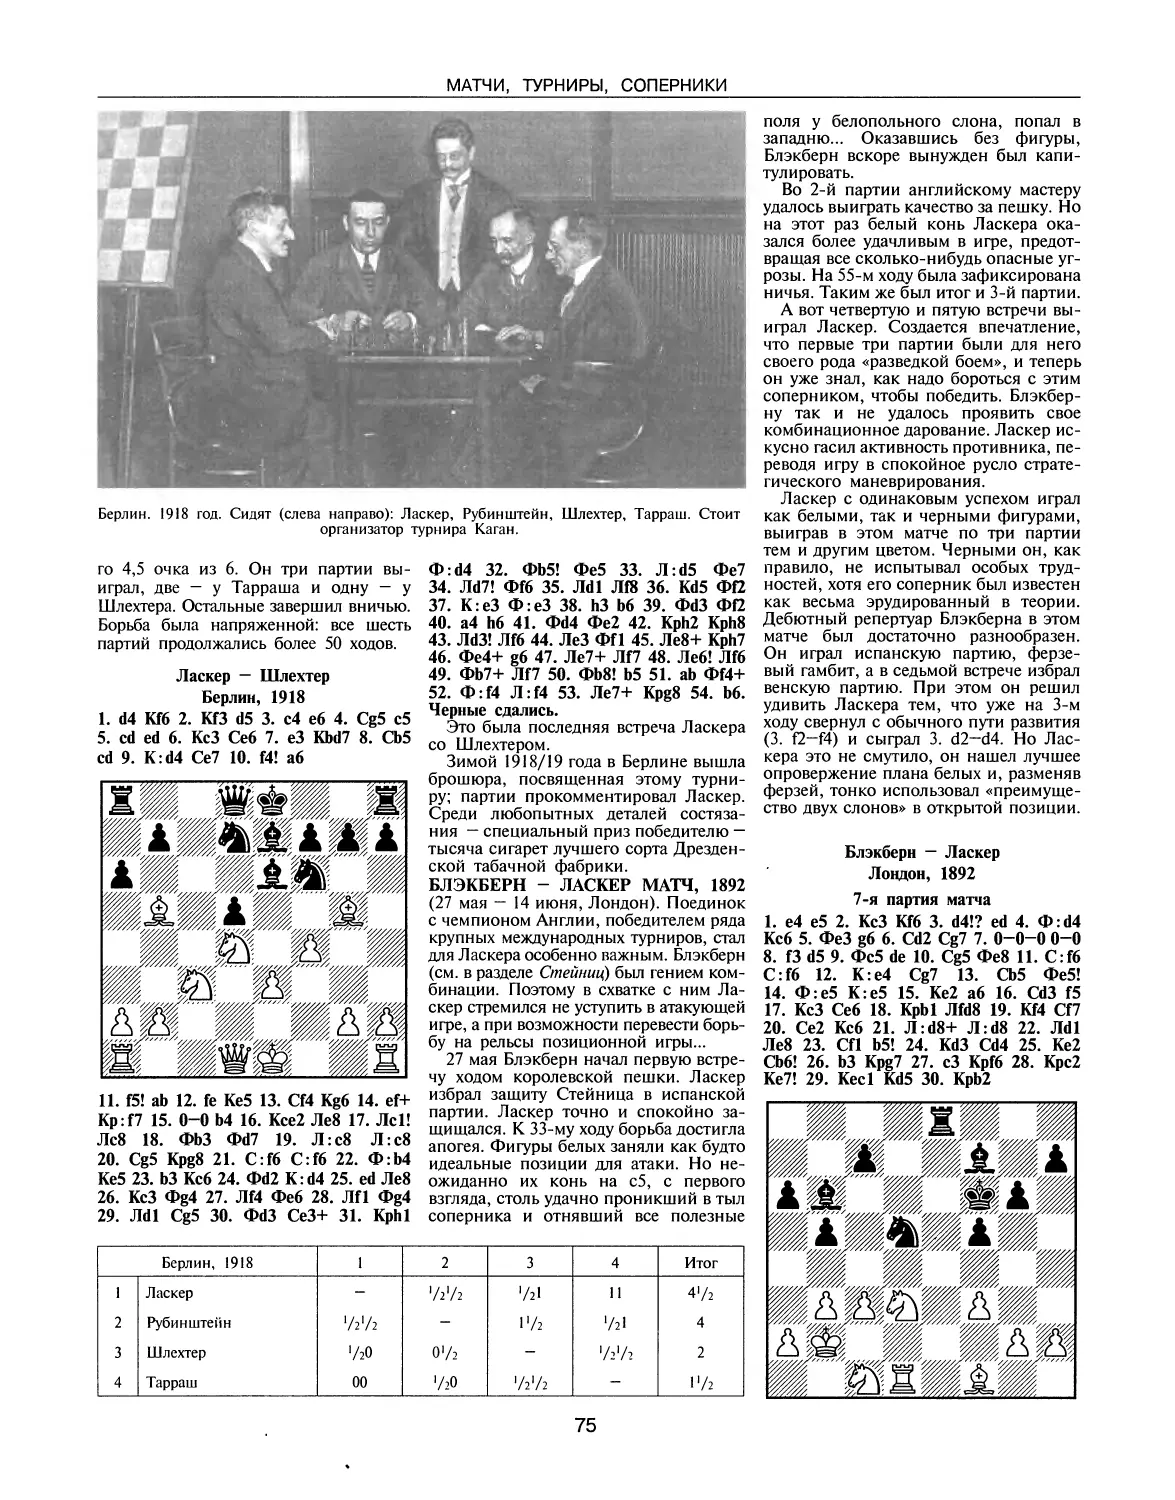 Блэкберн — Ласкер матч, 1892